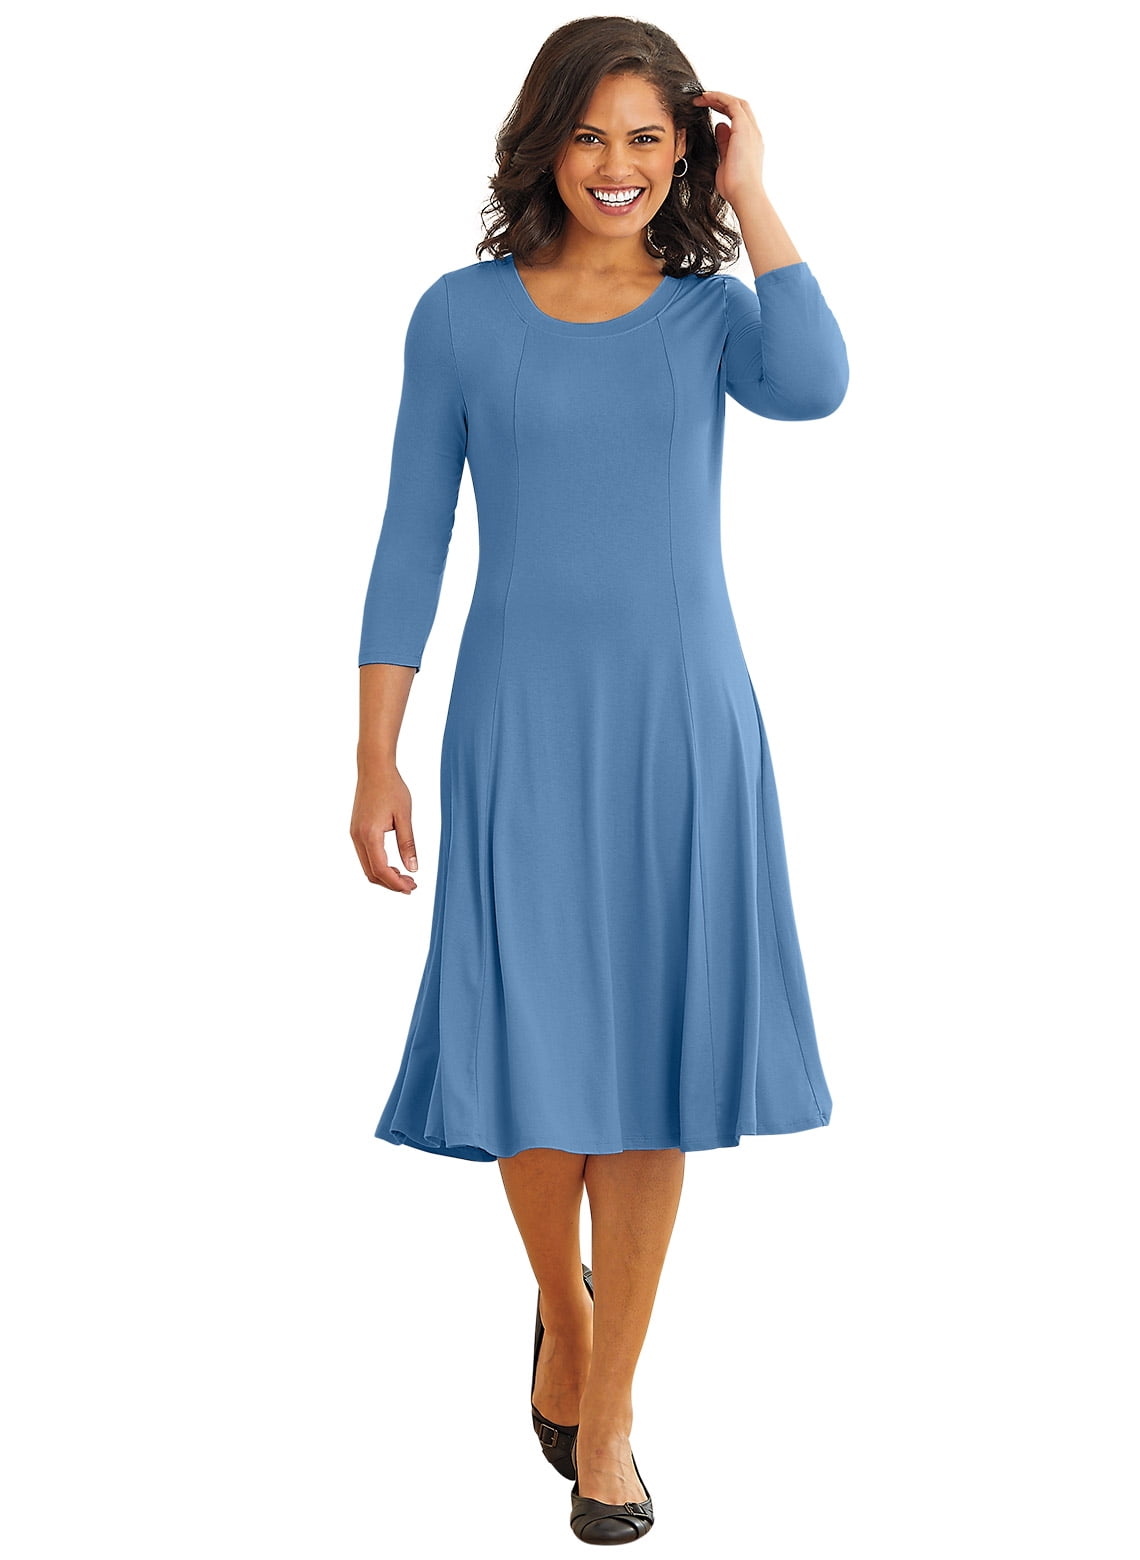 A-Line Flare Dress by Easy Essentials - Walmart.com